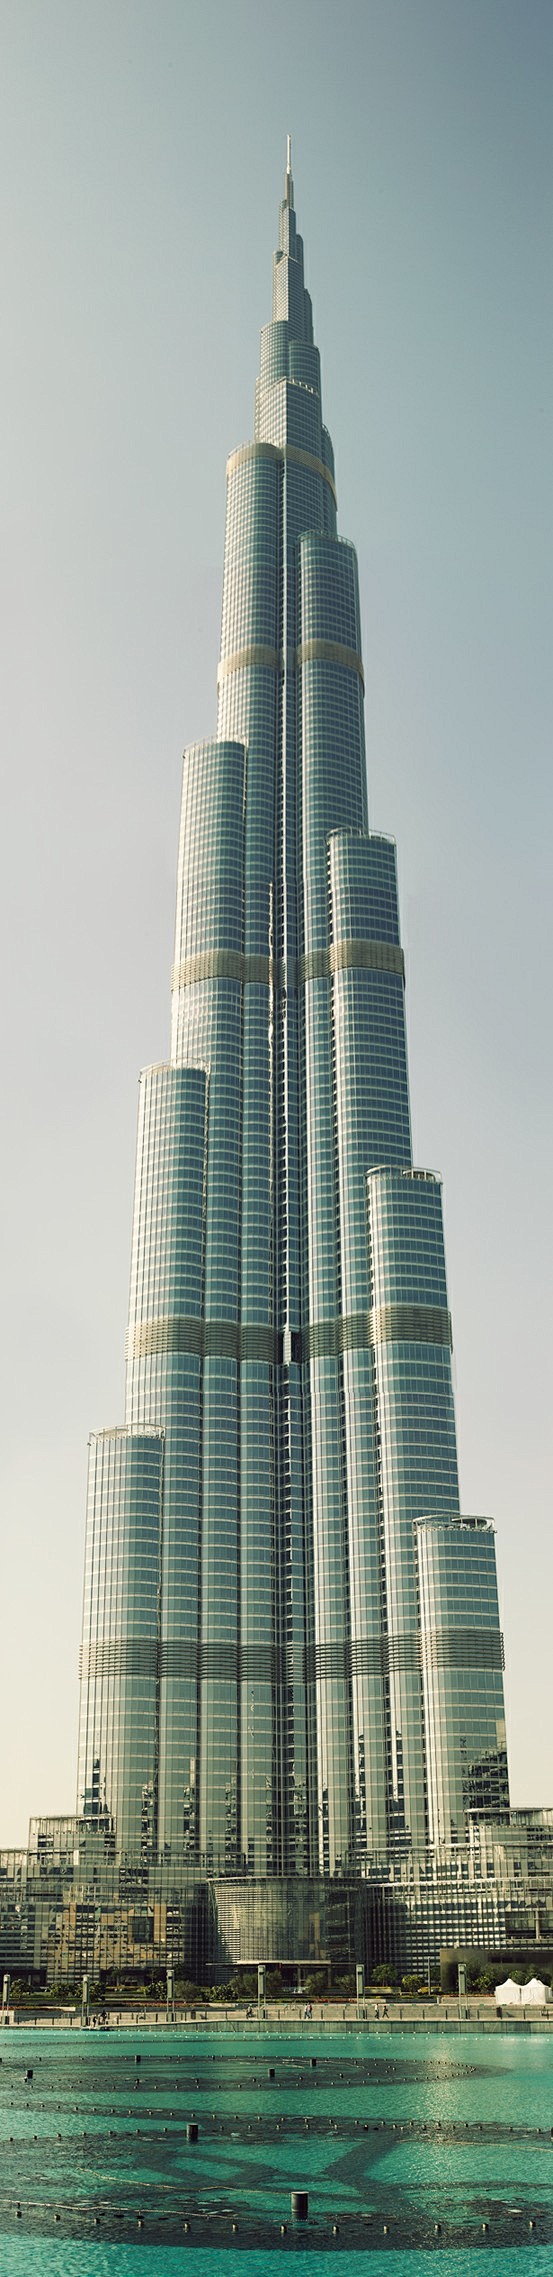 迪拜塔:世界第一高楼 2010.01.0...